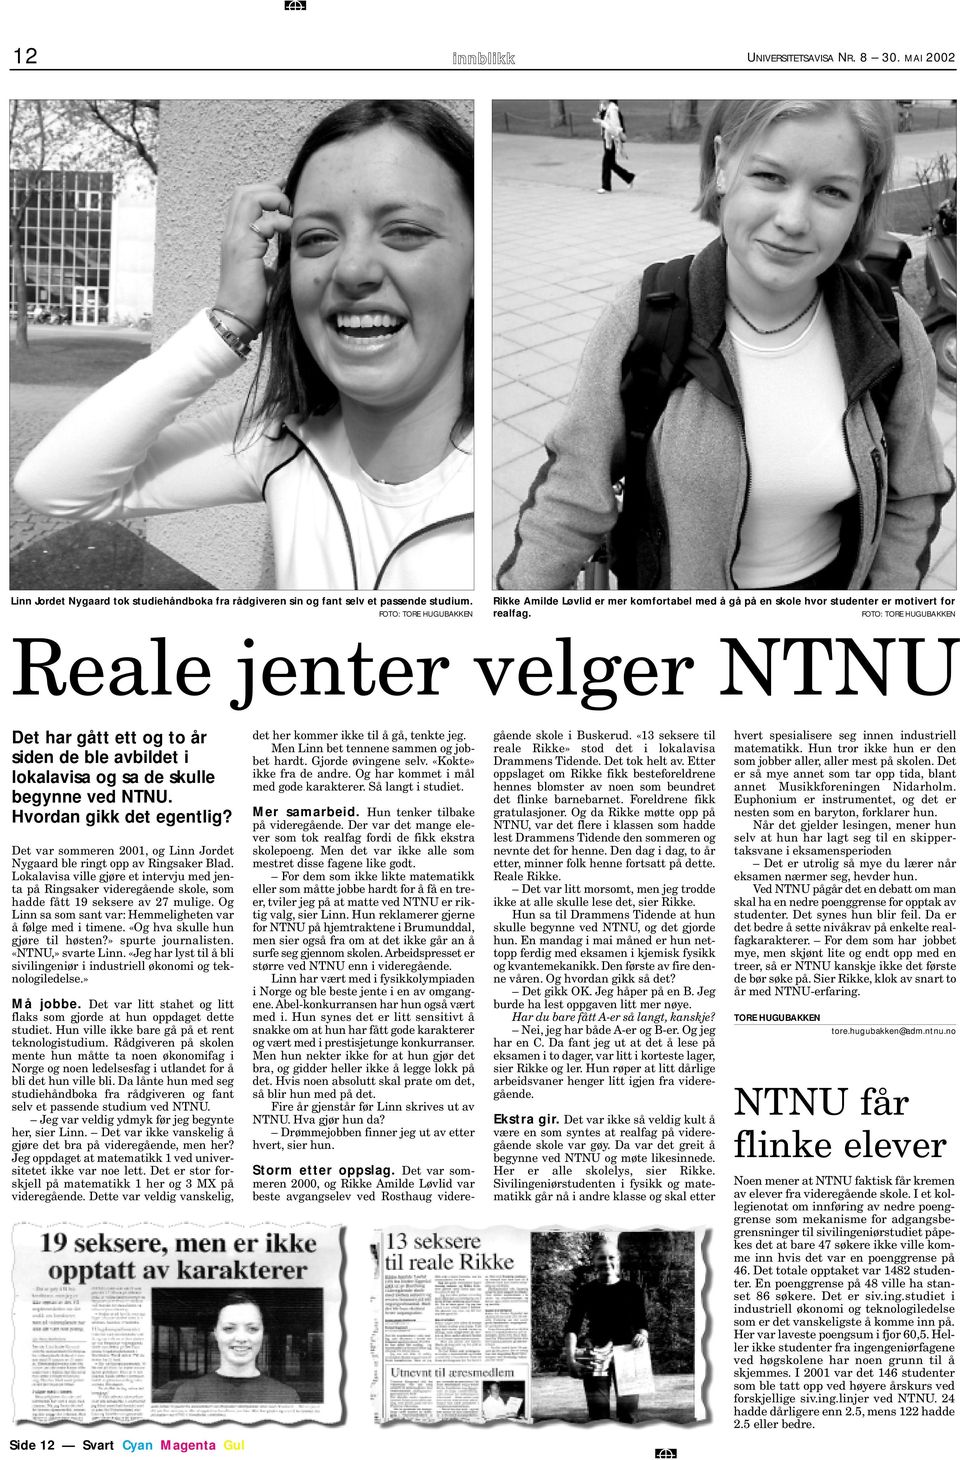 FOTO: TORE HUGUBAKKEN Reale jenter velger NTNU Det har gått ett og to år siden de ble avbildet i lokalavisa og sa de skulle begynne ved NTNU. Hvordan gikk det egentlig?